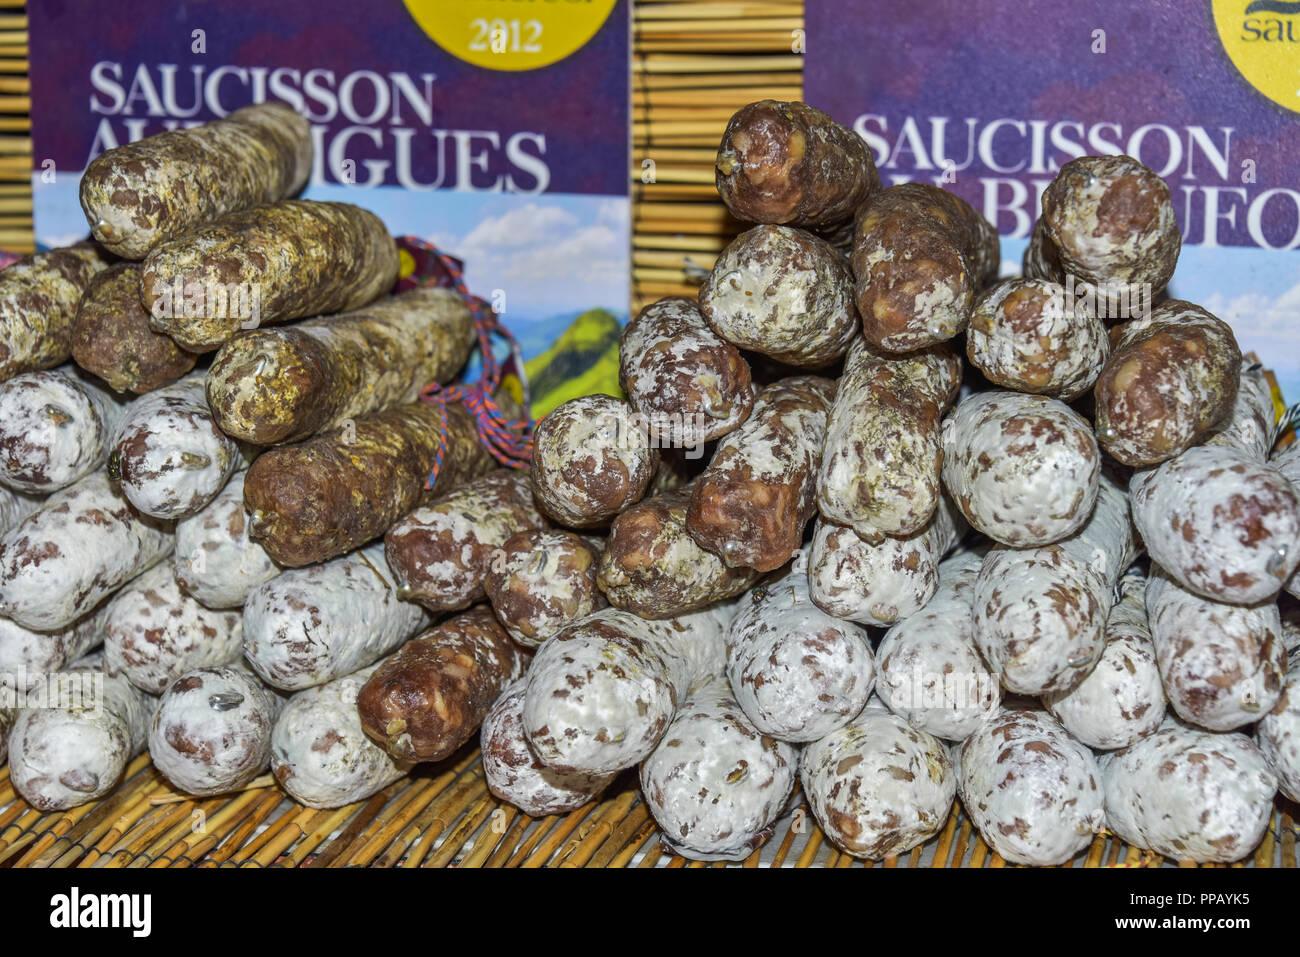 Regionale Produkte auf einem Straßenmarkt in Riez in der Provence, Frankreich, Stall mit trockenen Wurst am jährlichen Festival der Lavendel Honig Stockfoto